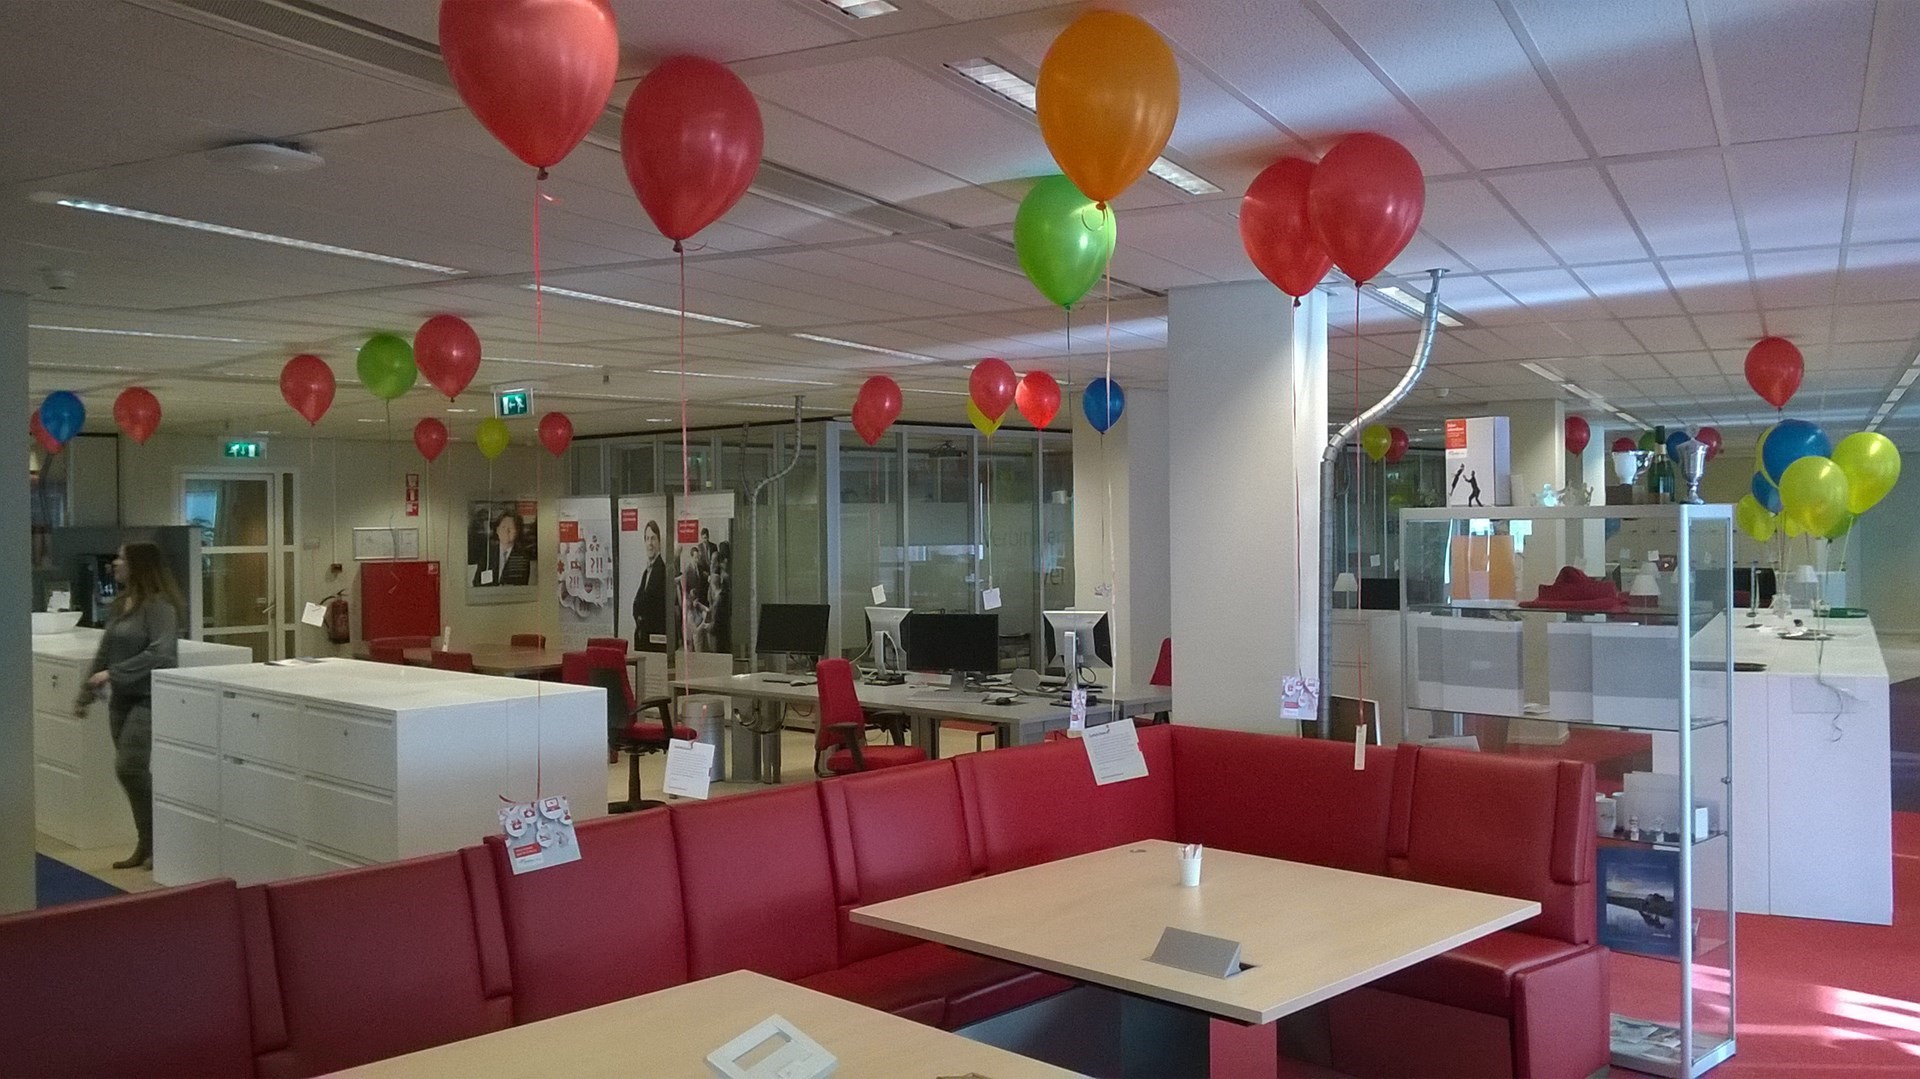 ballonnen tegen plafond voor lancering nieuwe website Amersfoort